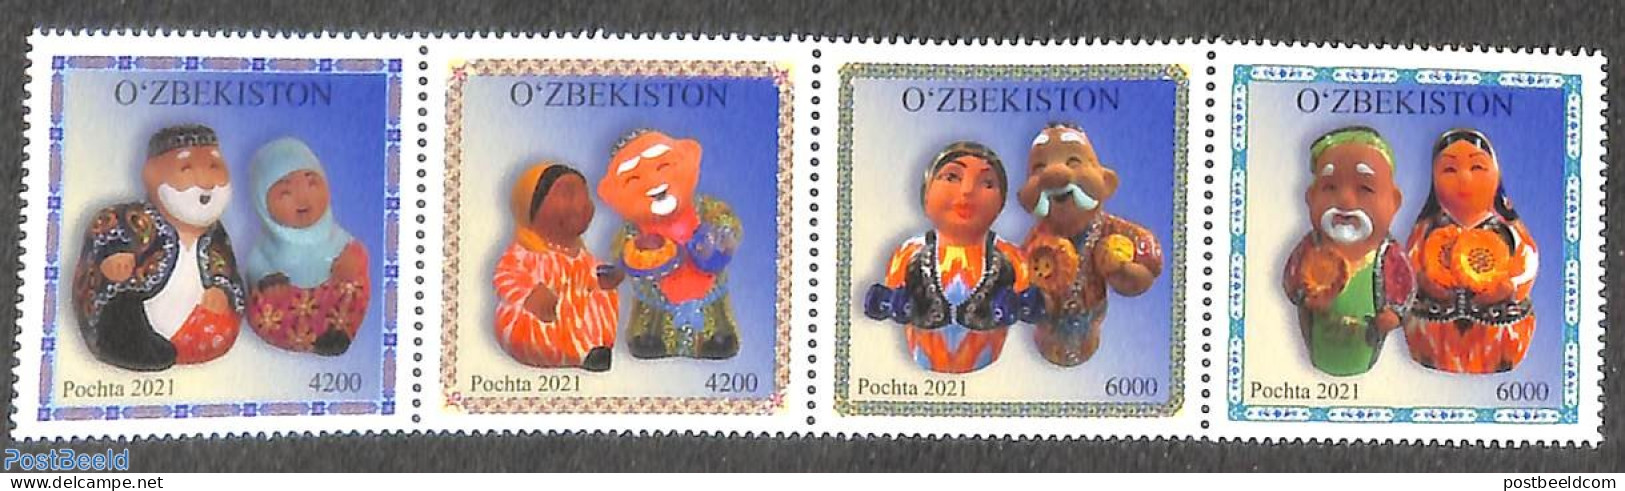 Uzbekistan 2022 Tradional Clay Puppets 4v [:::], Mint NH - Uzbekistan